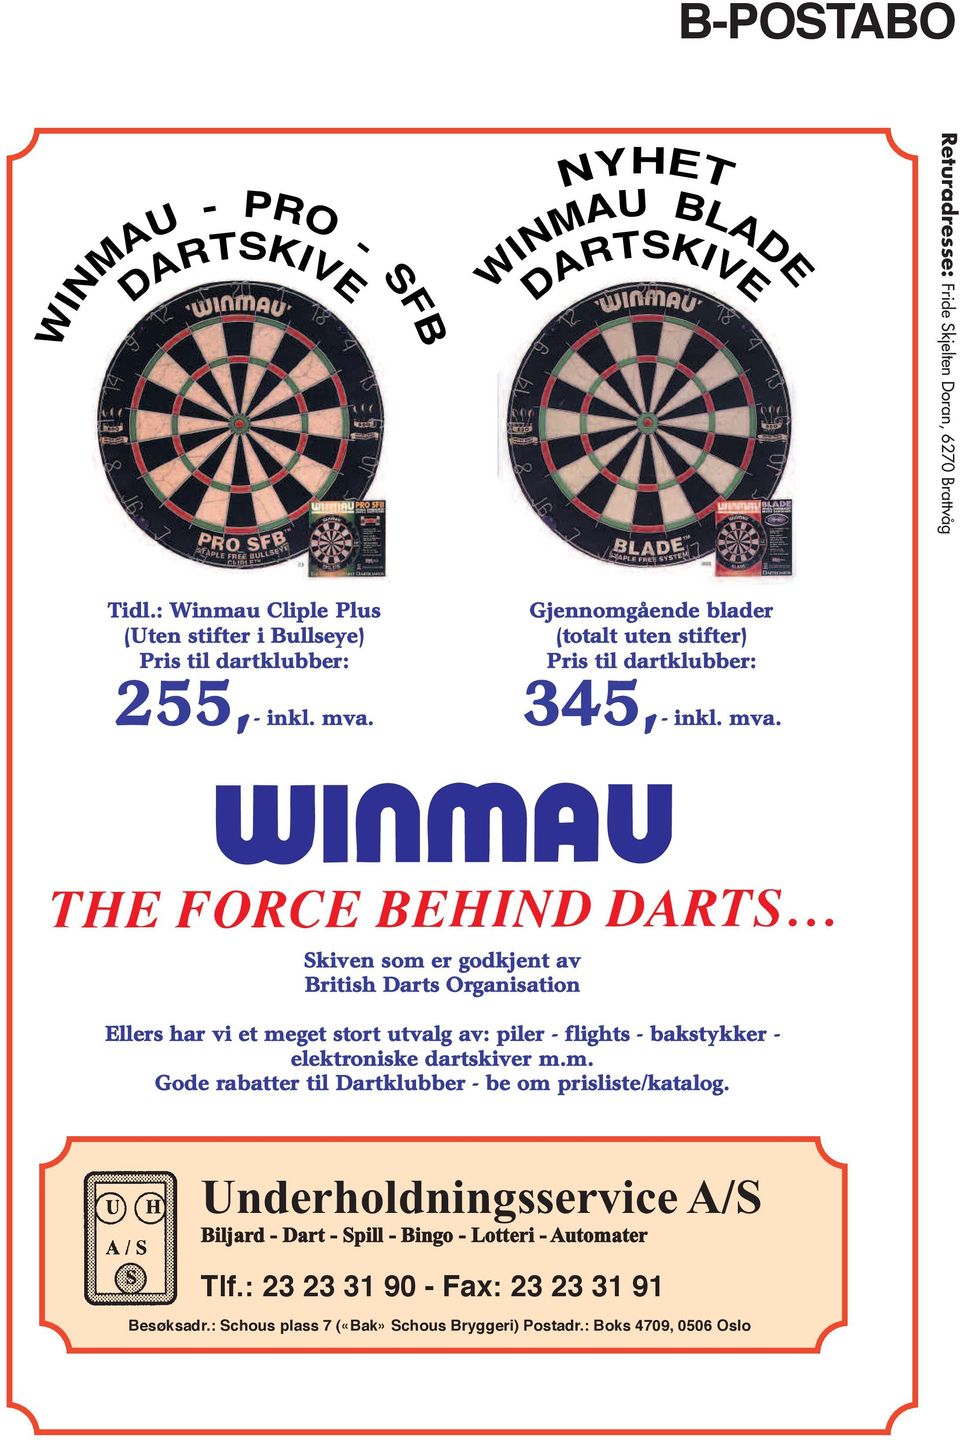 Gjennomgående blader (totalt uten stifter) Pris til dartklubber: 345,- inkl. mva.